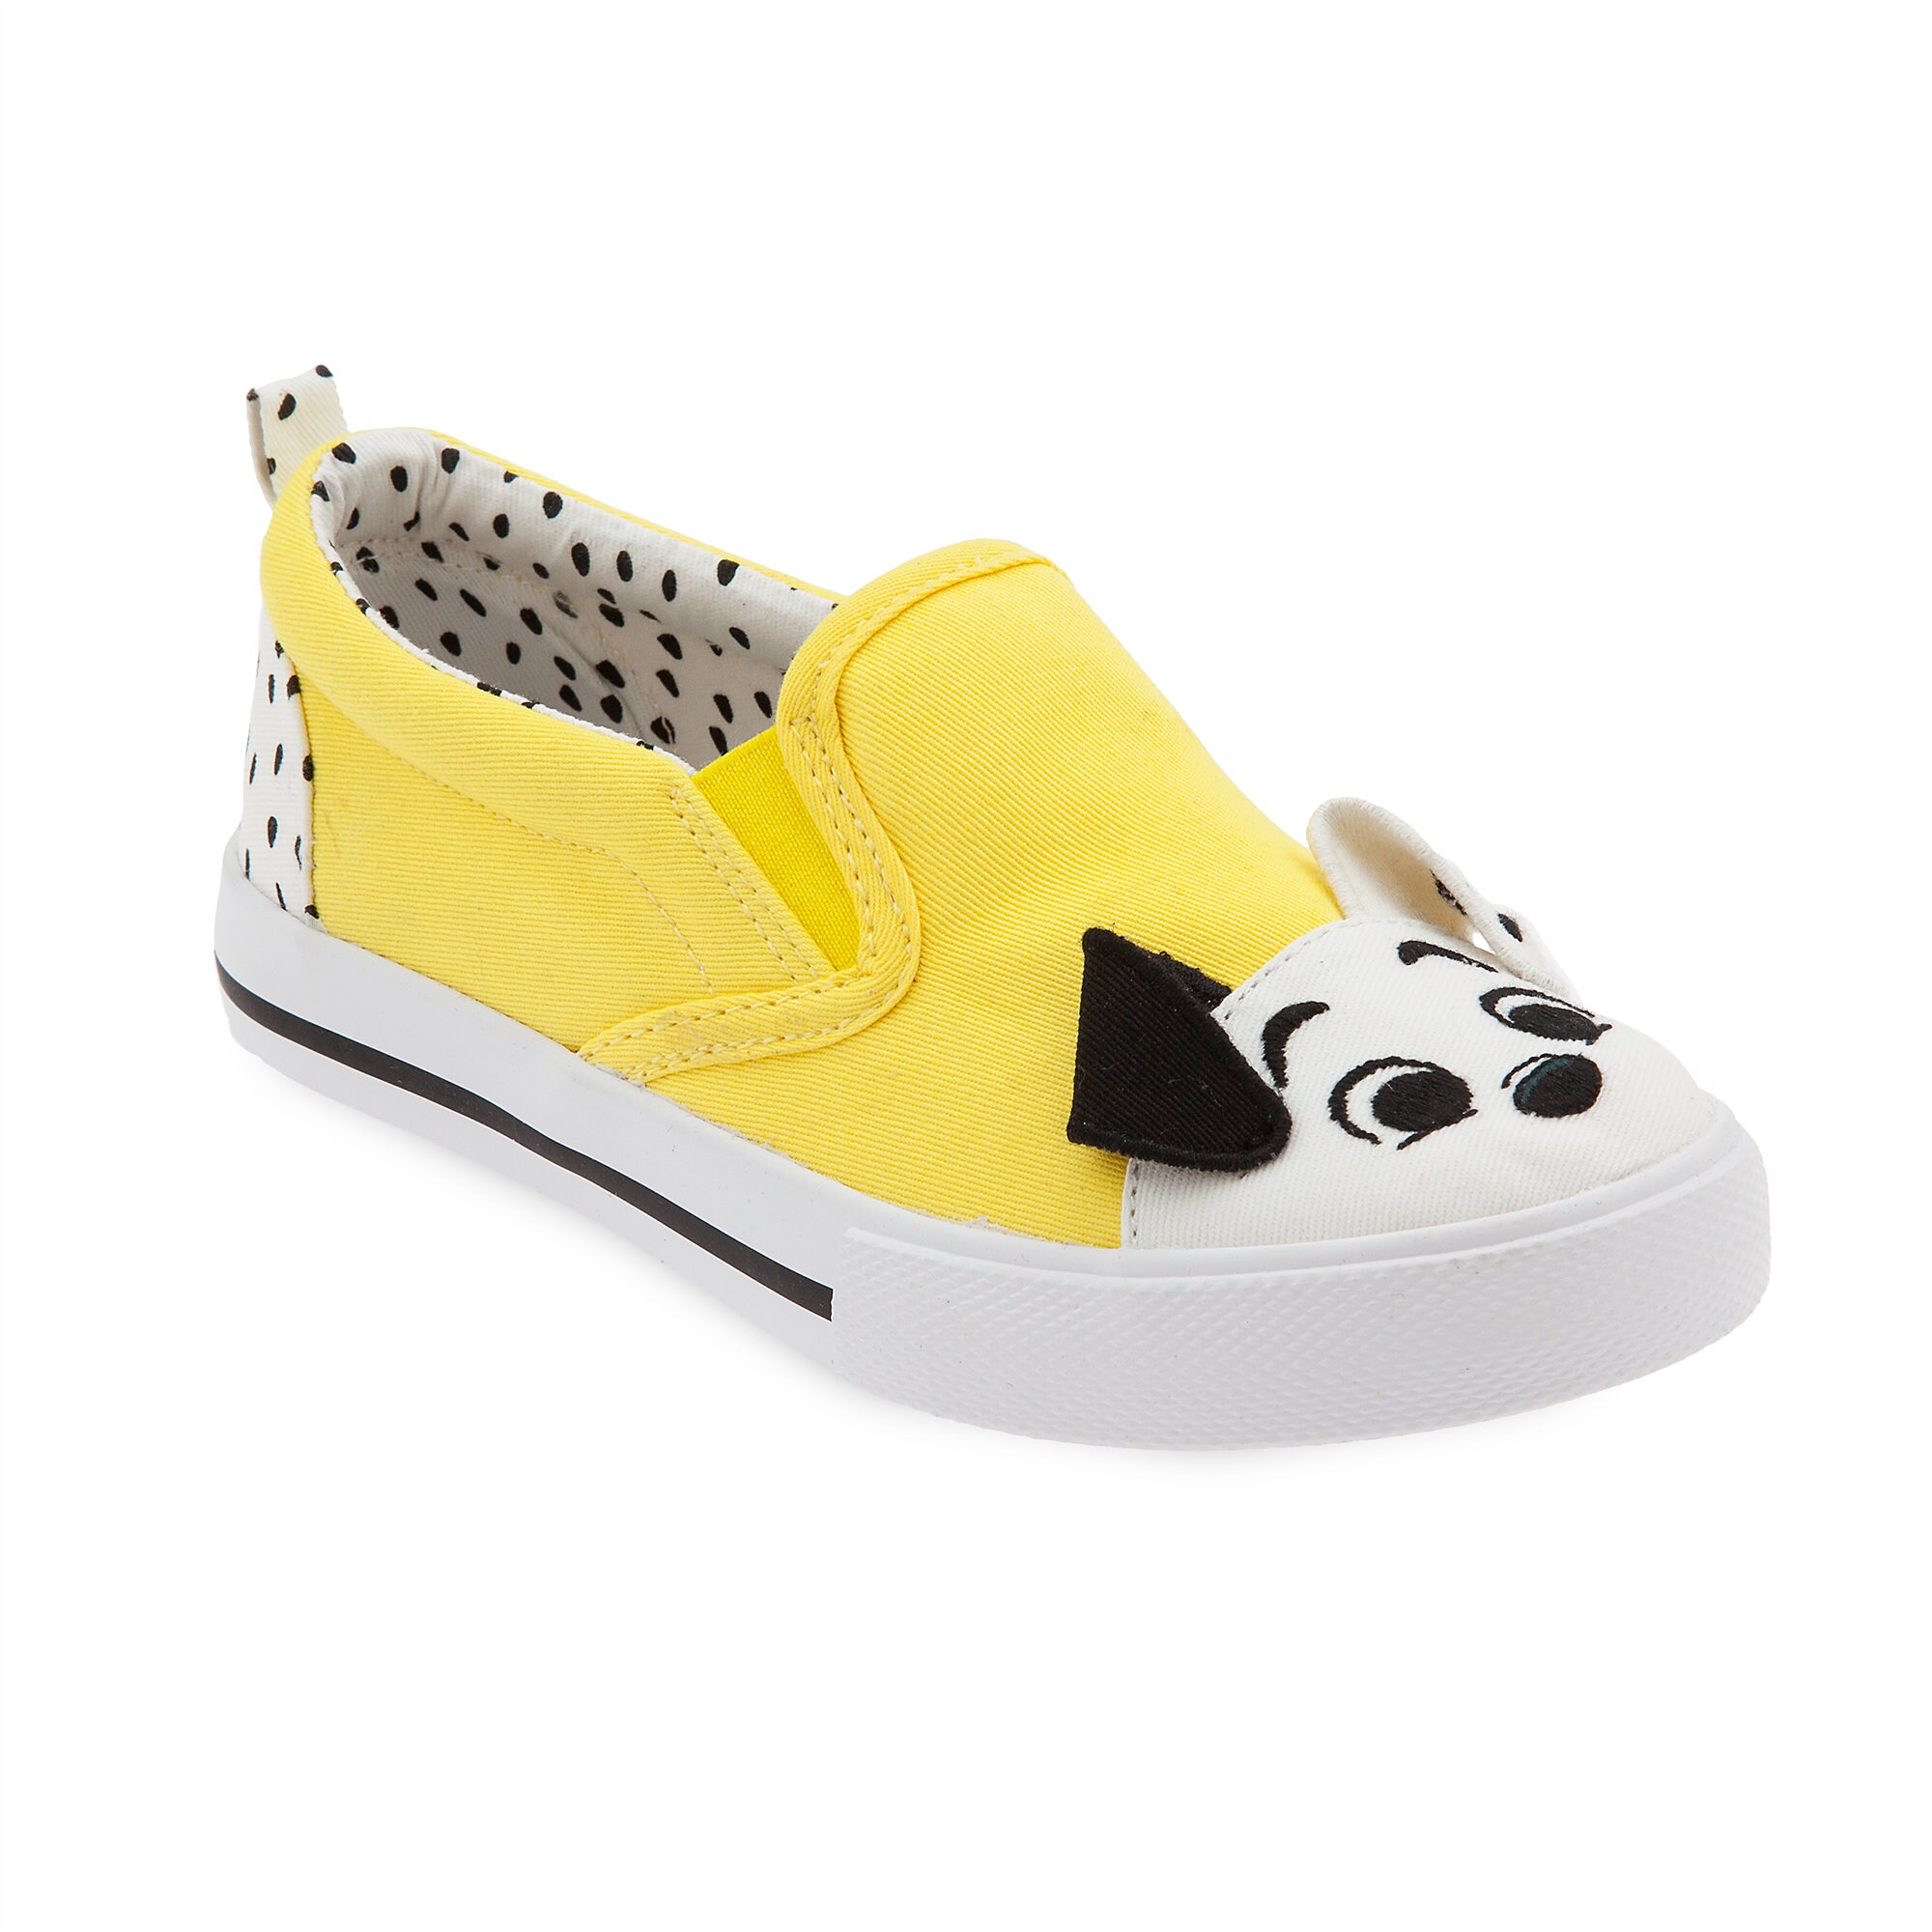 101 Dalmatians Slip-On Sneakers for Kids - Disney Furrytale friends